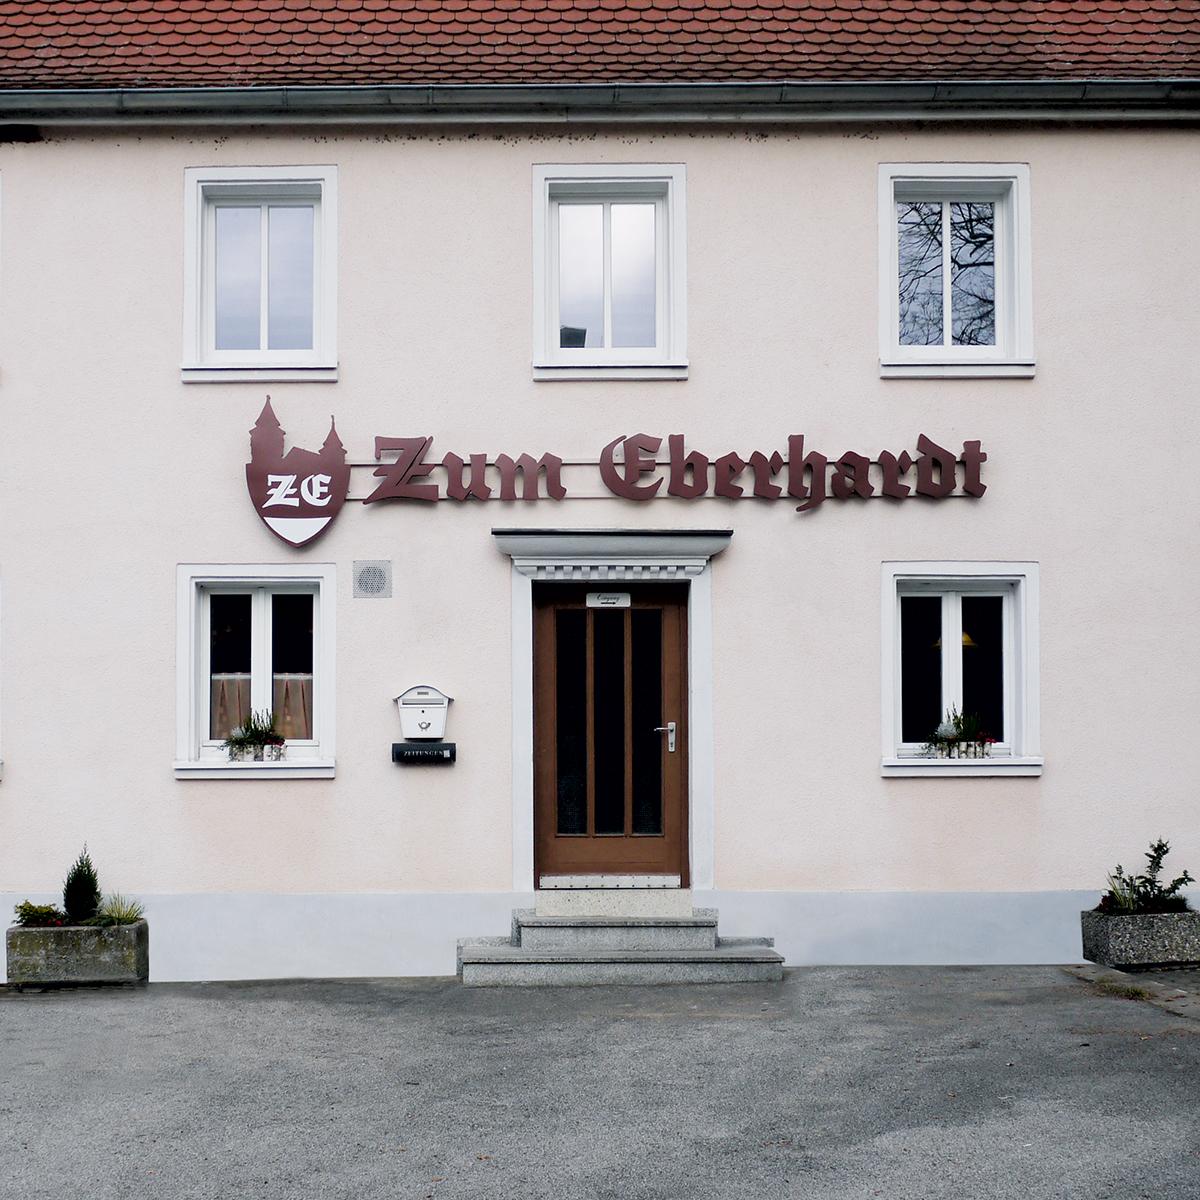 Restaurant "Zum Eberhardt" in Lichtenau